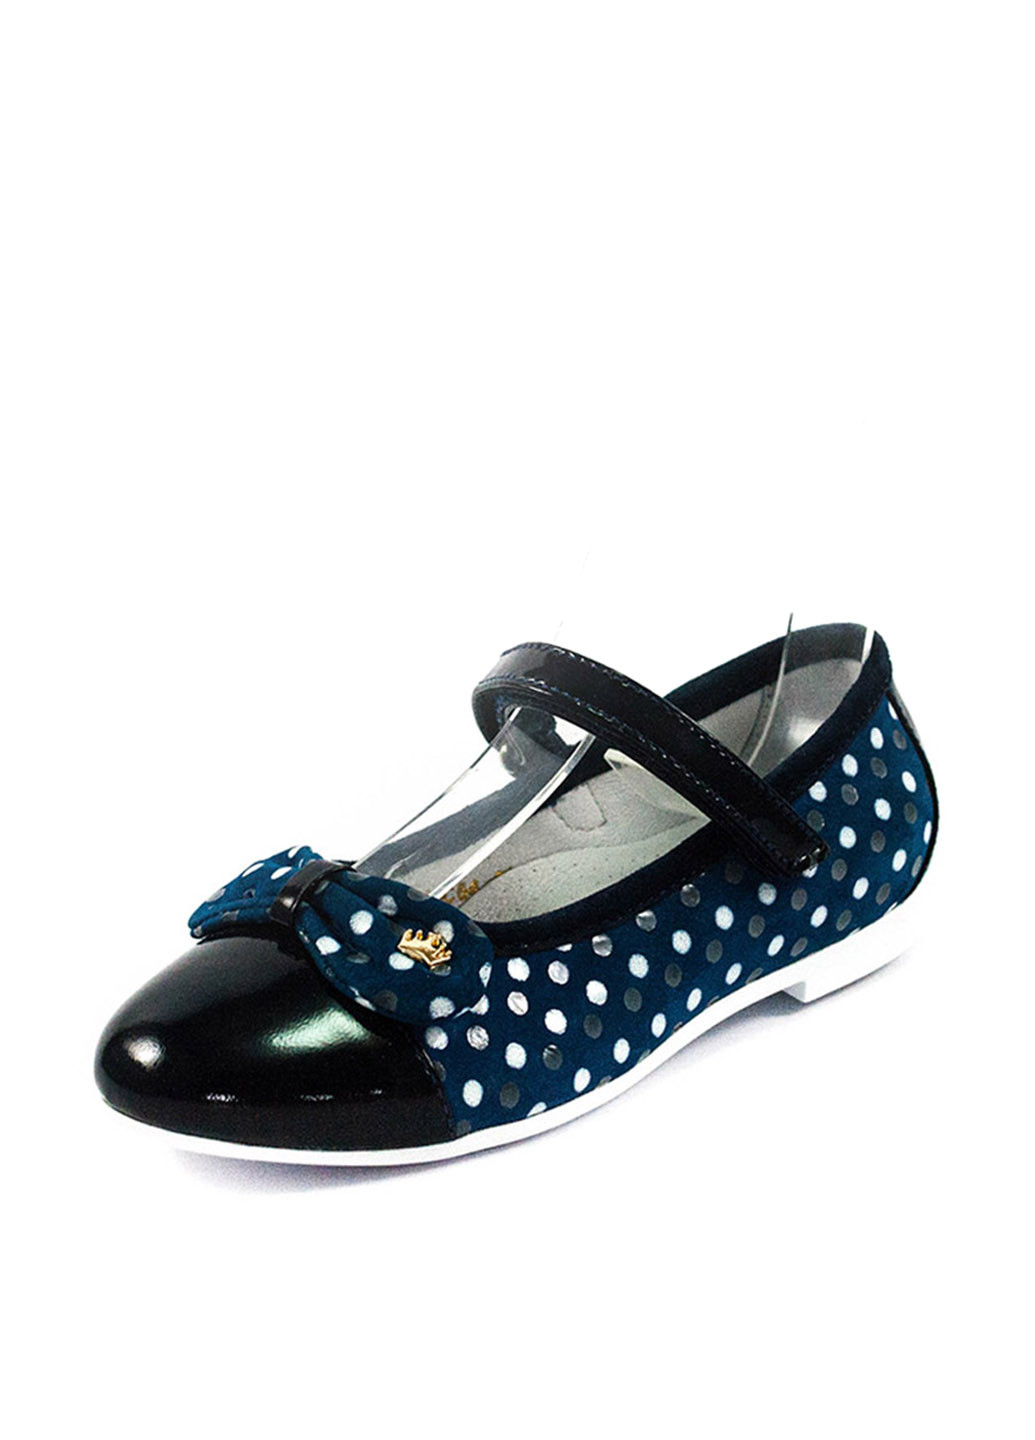 Темно-синие туфли на низком каблуке Foletti Kids